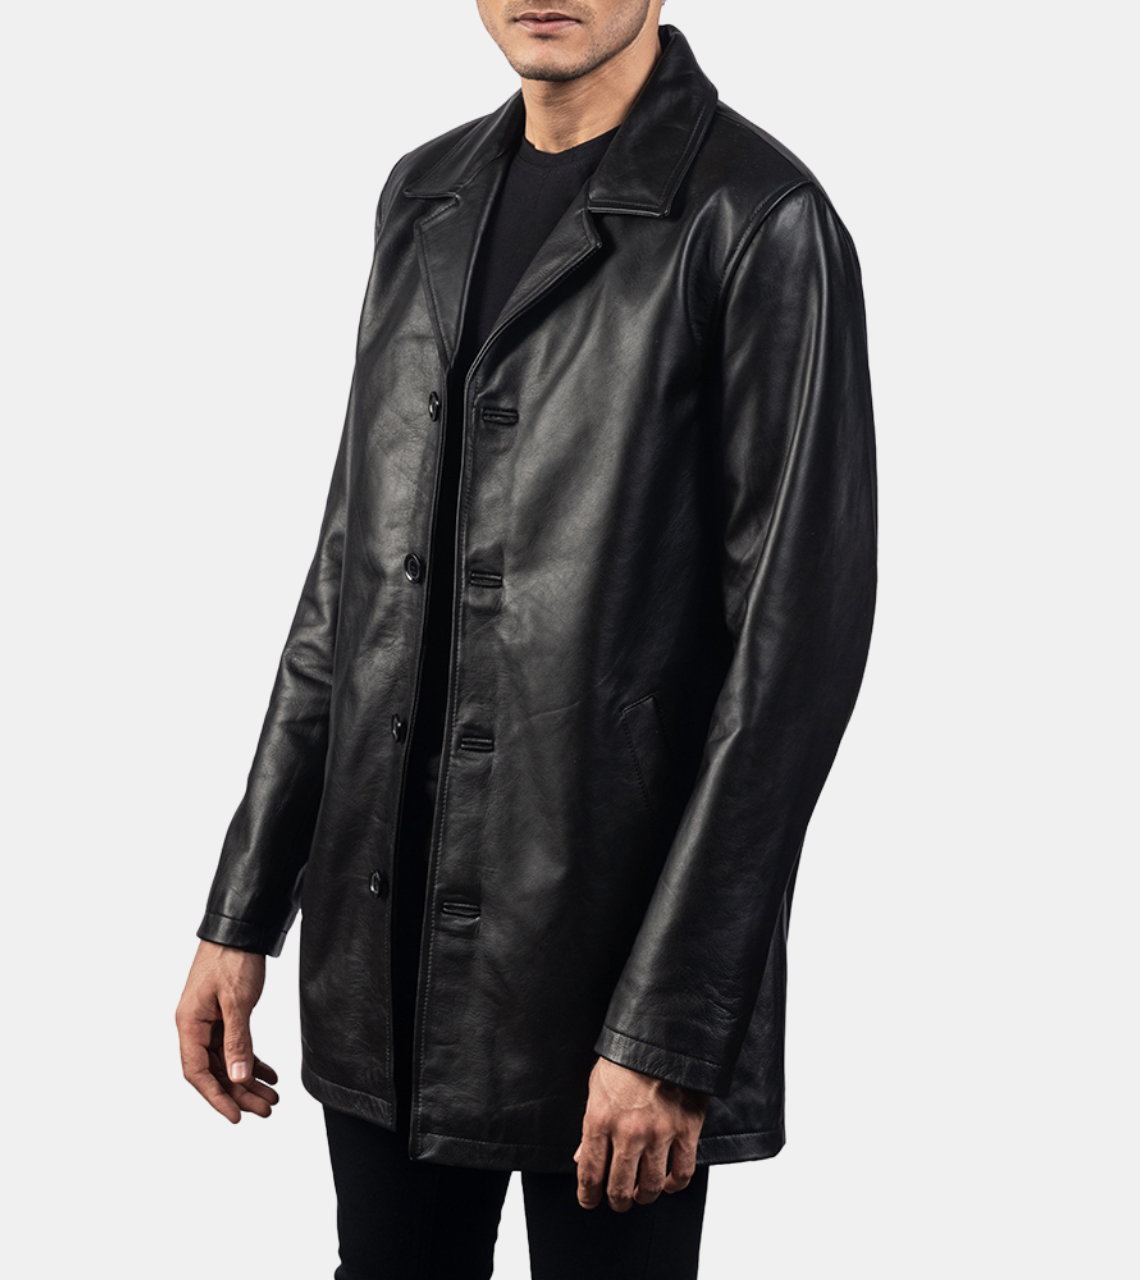 Sage Men's Black Leather Coat